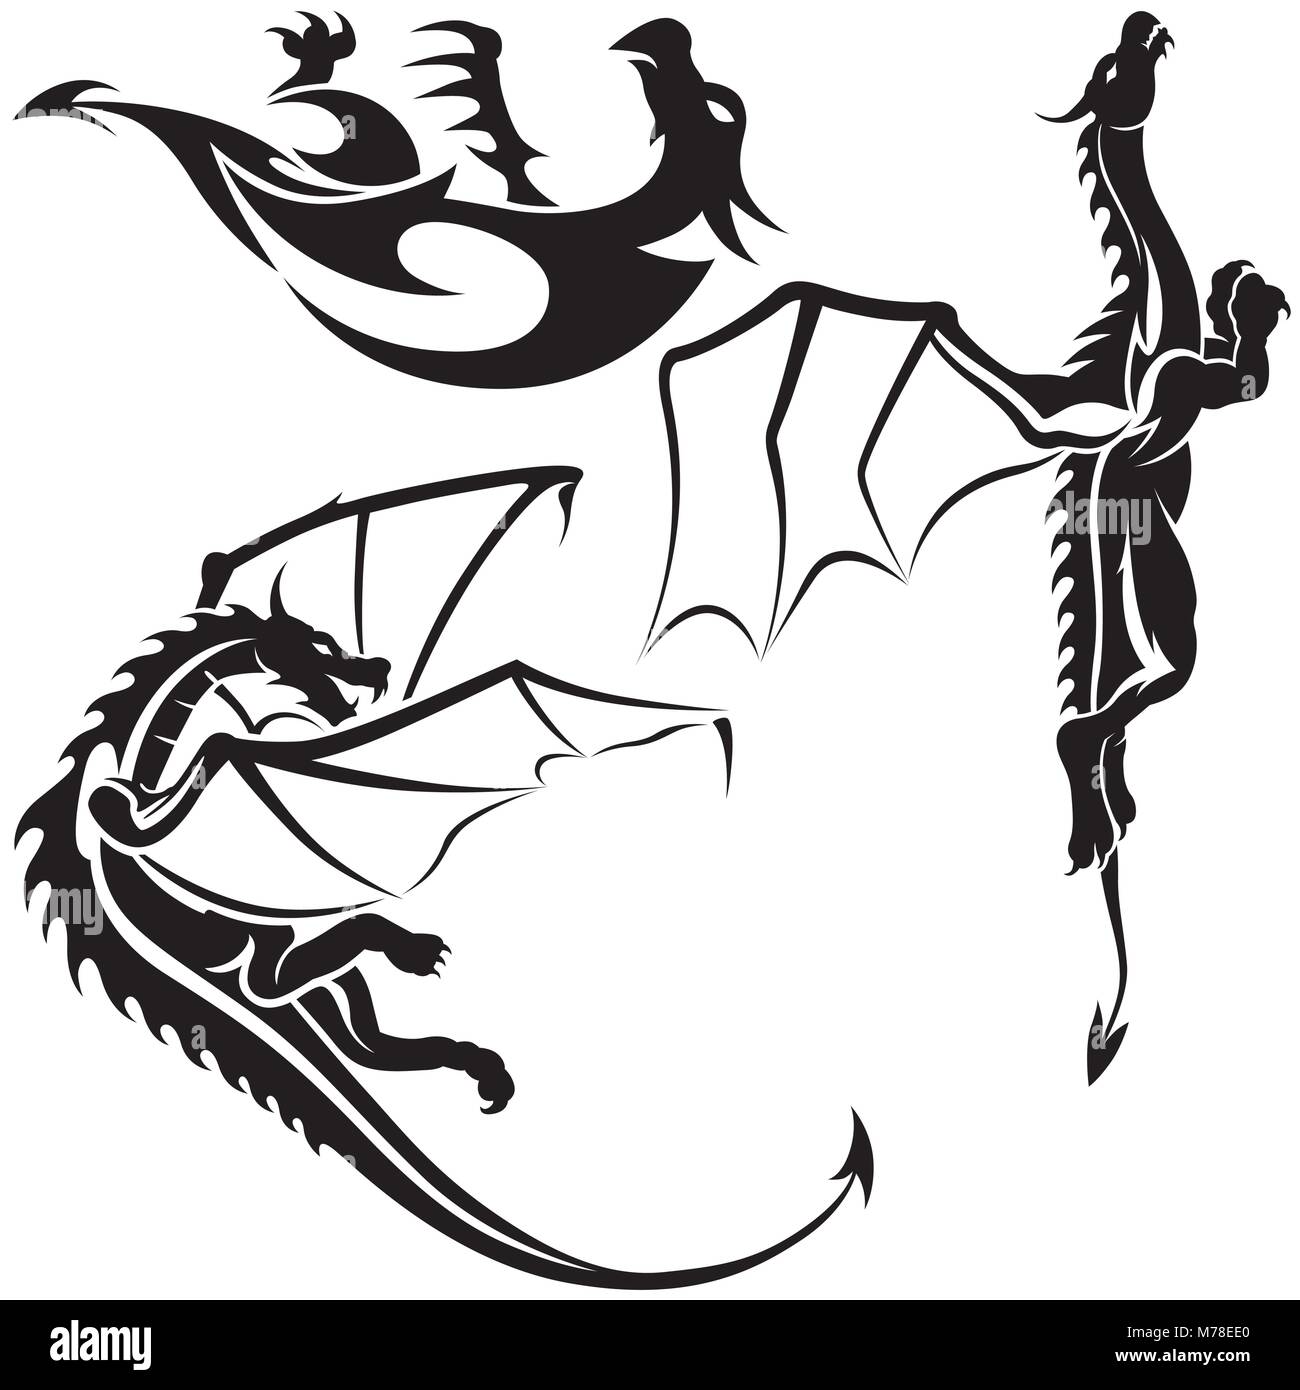 Tatouage Dragons Illustration de Vecteur